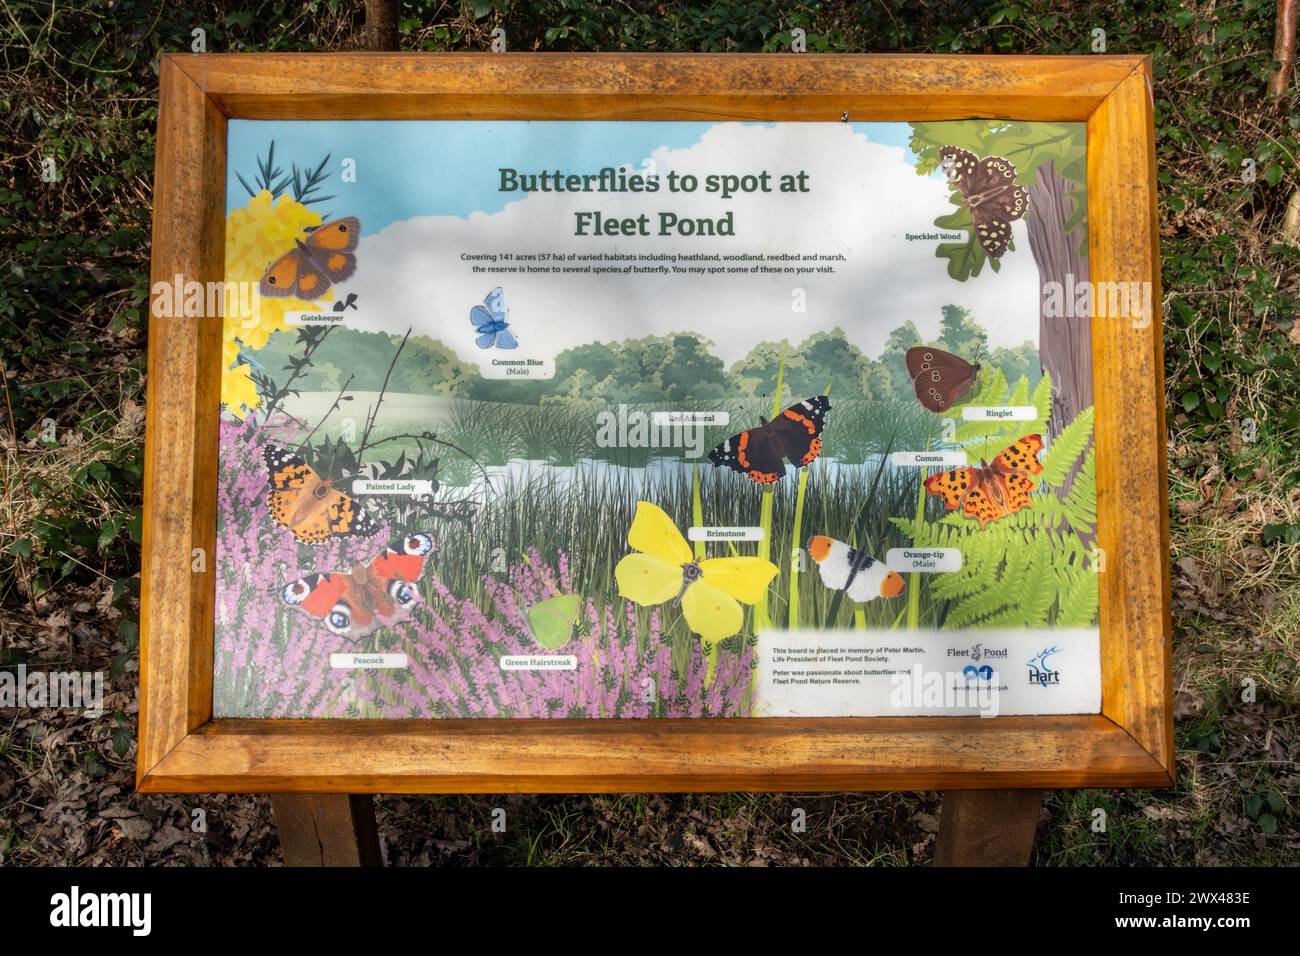 Panneau d'information sur les papillons à observer à Fleet Pond, une réserve naturelle locale dans le Hampshire, Angleterre, Royaume-Uni Banque D'Images